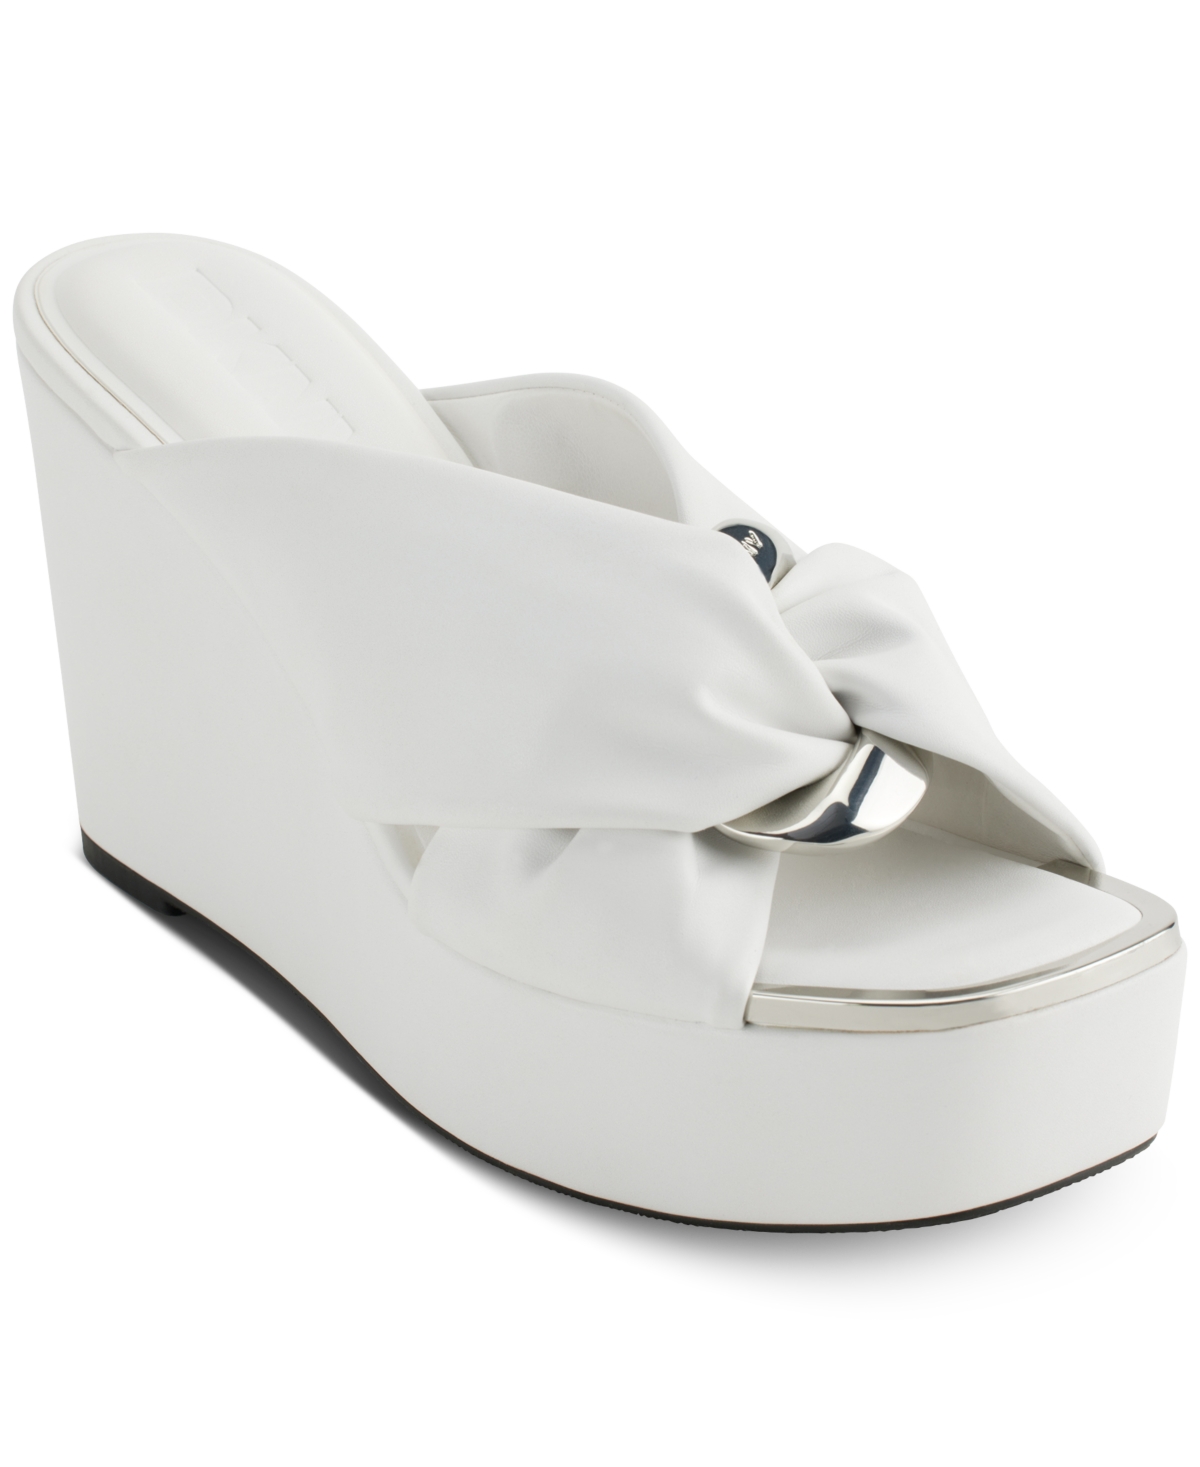 Women's Maryn Chain Twist Platform Wedge Sandals - Bright White